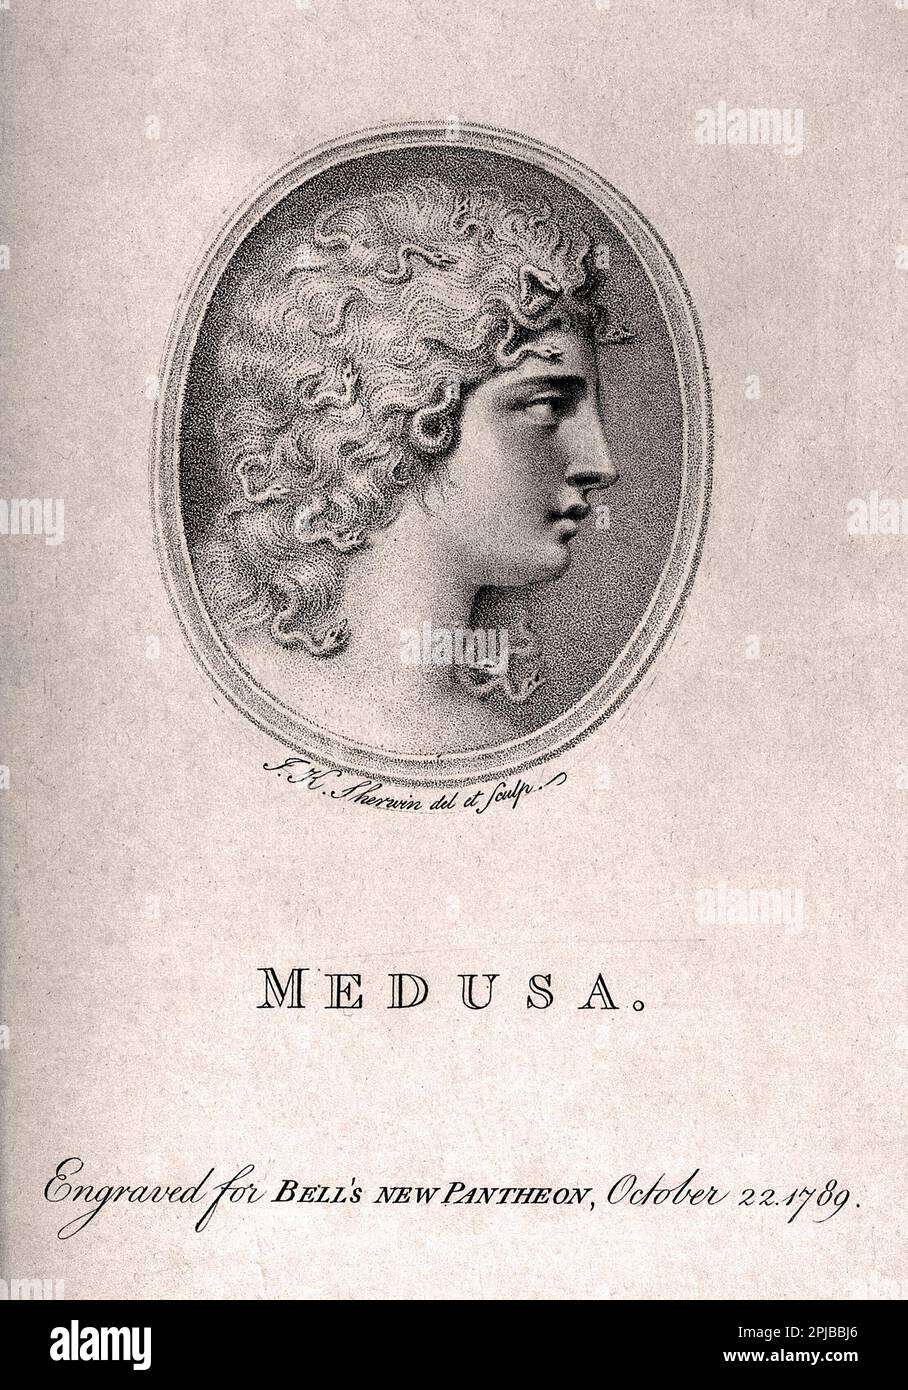 Medusa, gravure en crépons vintage de J.K. Sherwin de 1789 Banque D'Images